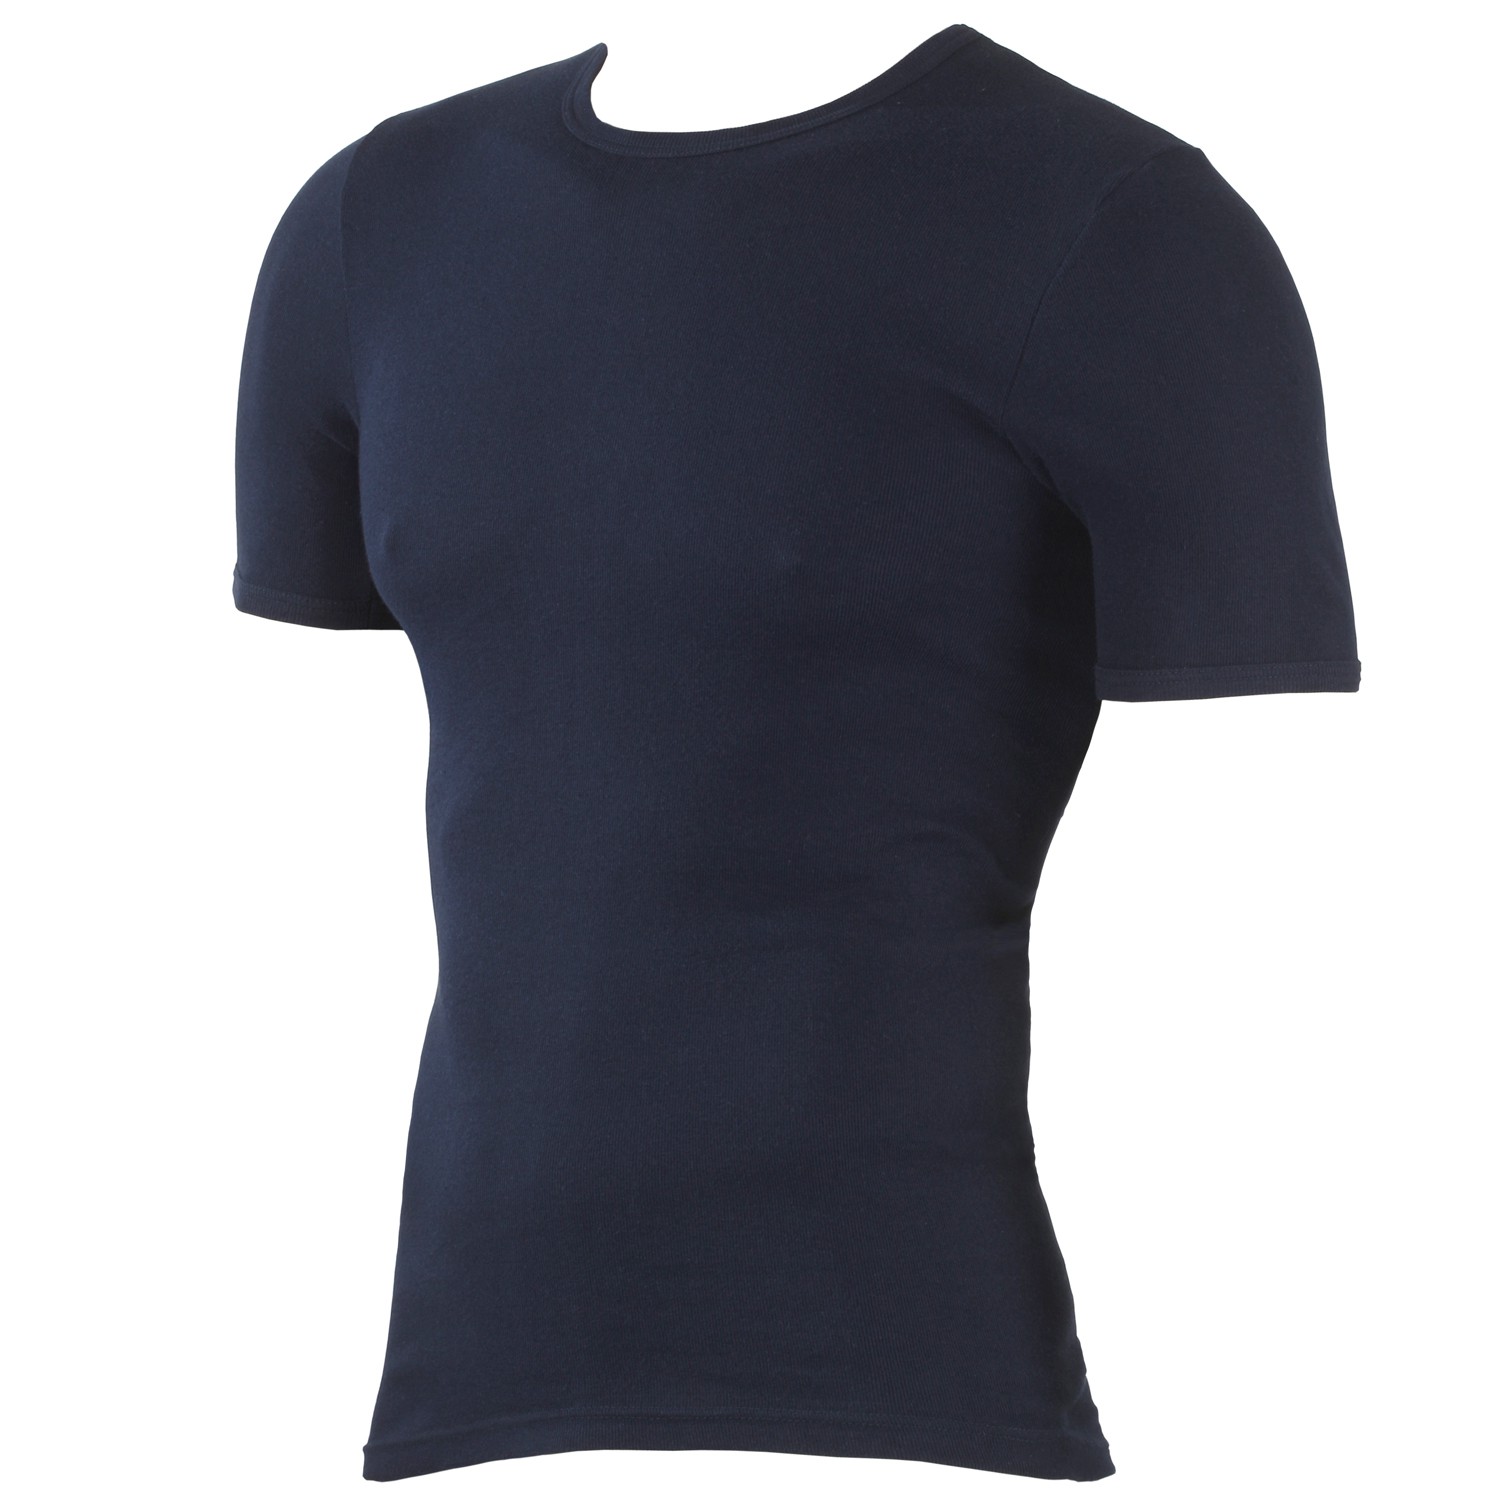 T-shirt bleu foncé - côte fine - Kapart // grandes tailles jusqu'à 20